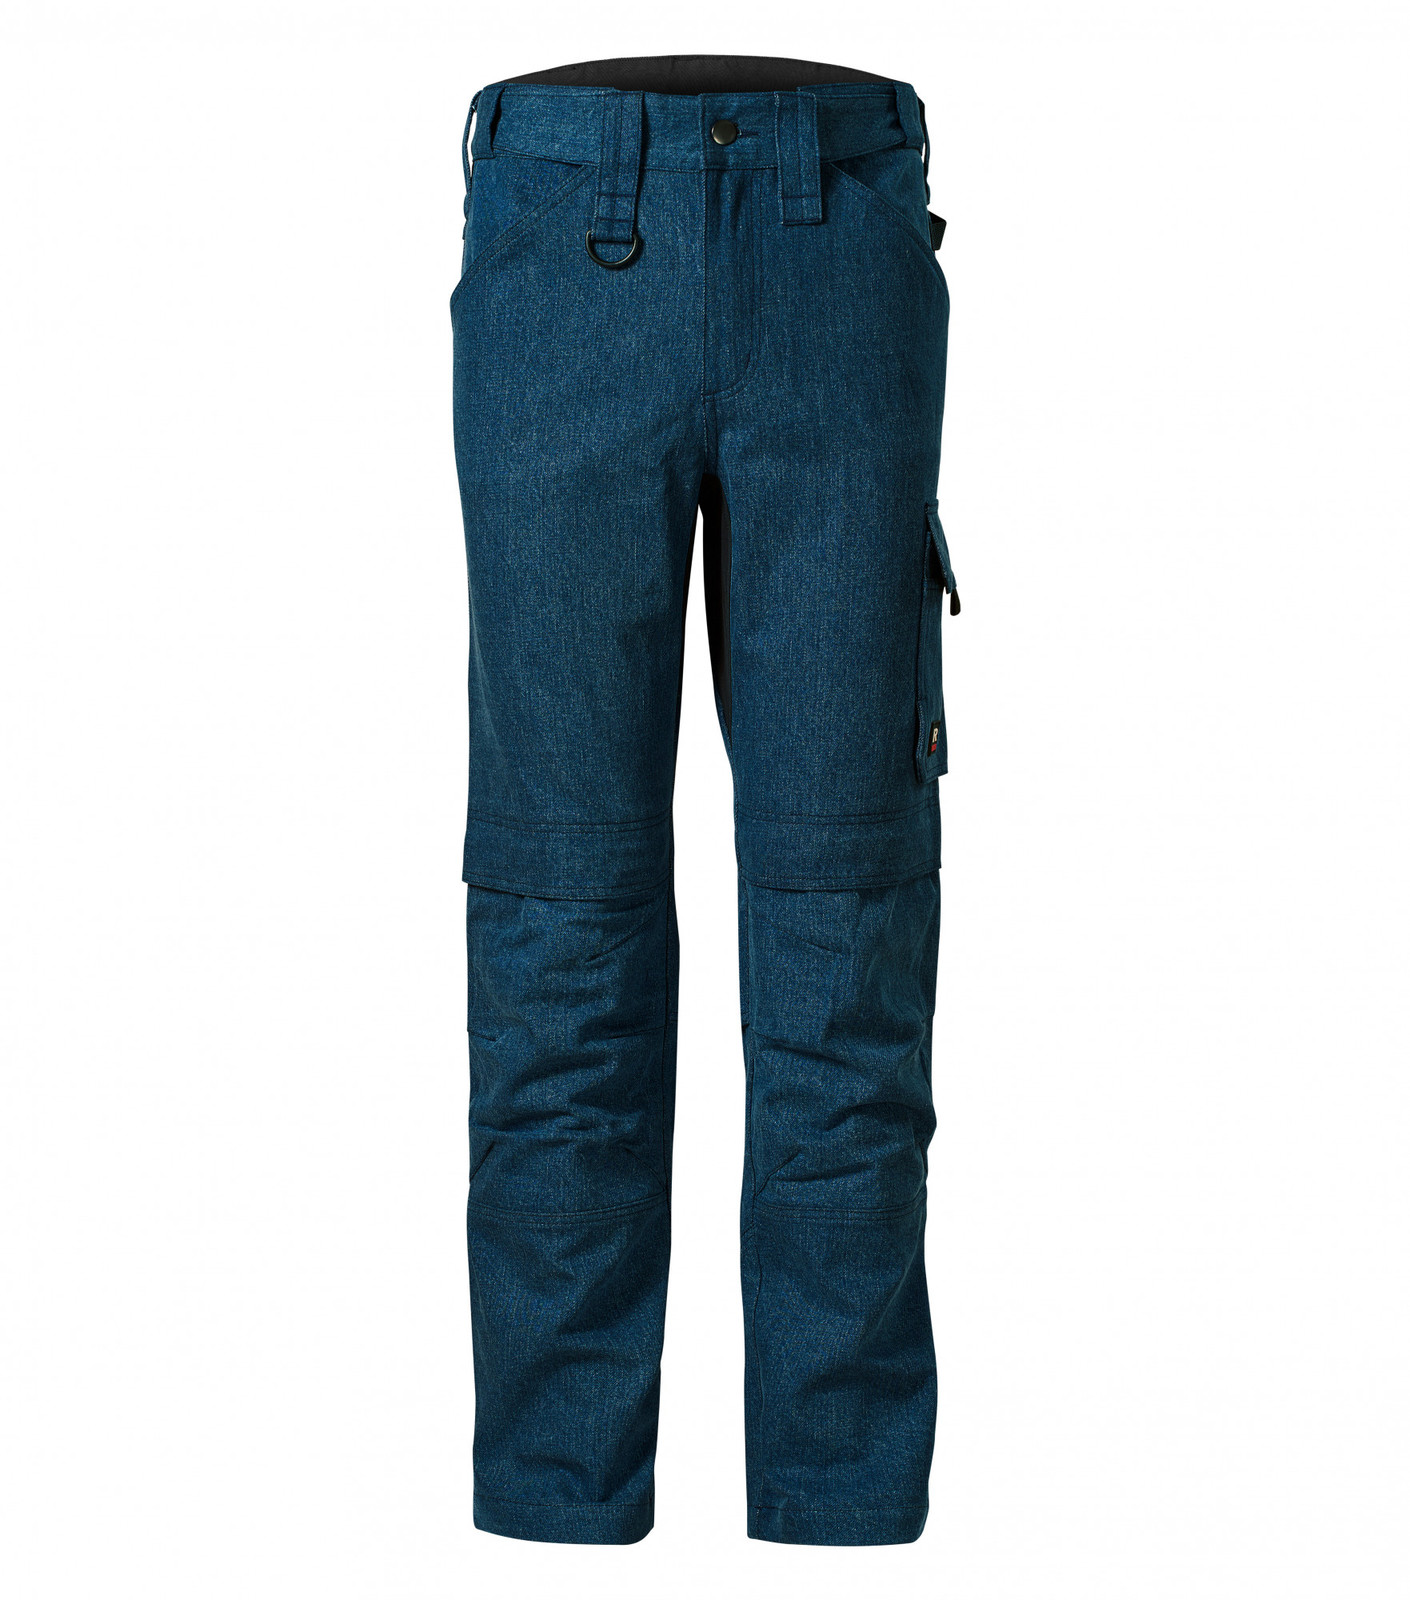 Pánske pracovné džínsy Rimeck Vertex W08 - veľkosť: 62, farba: tmavá navy